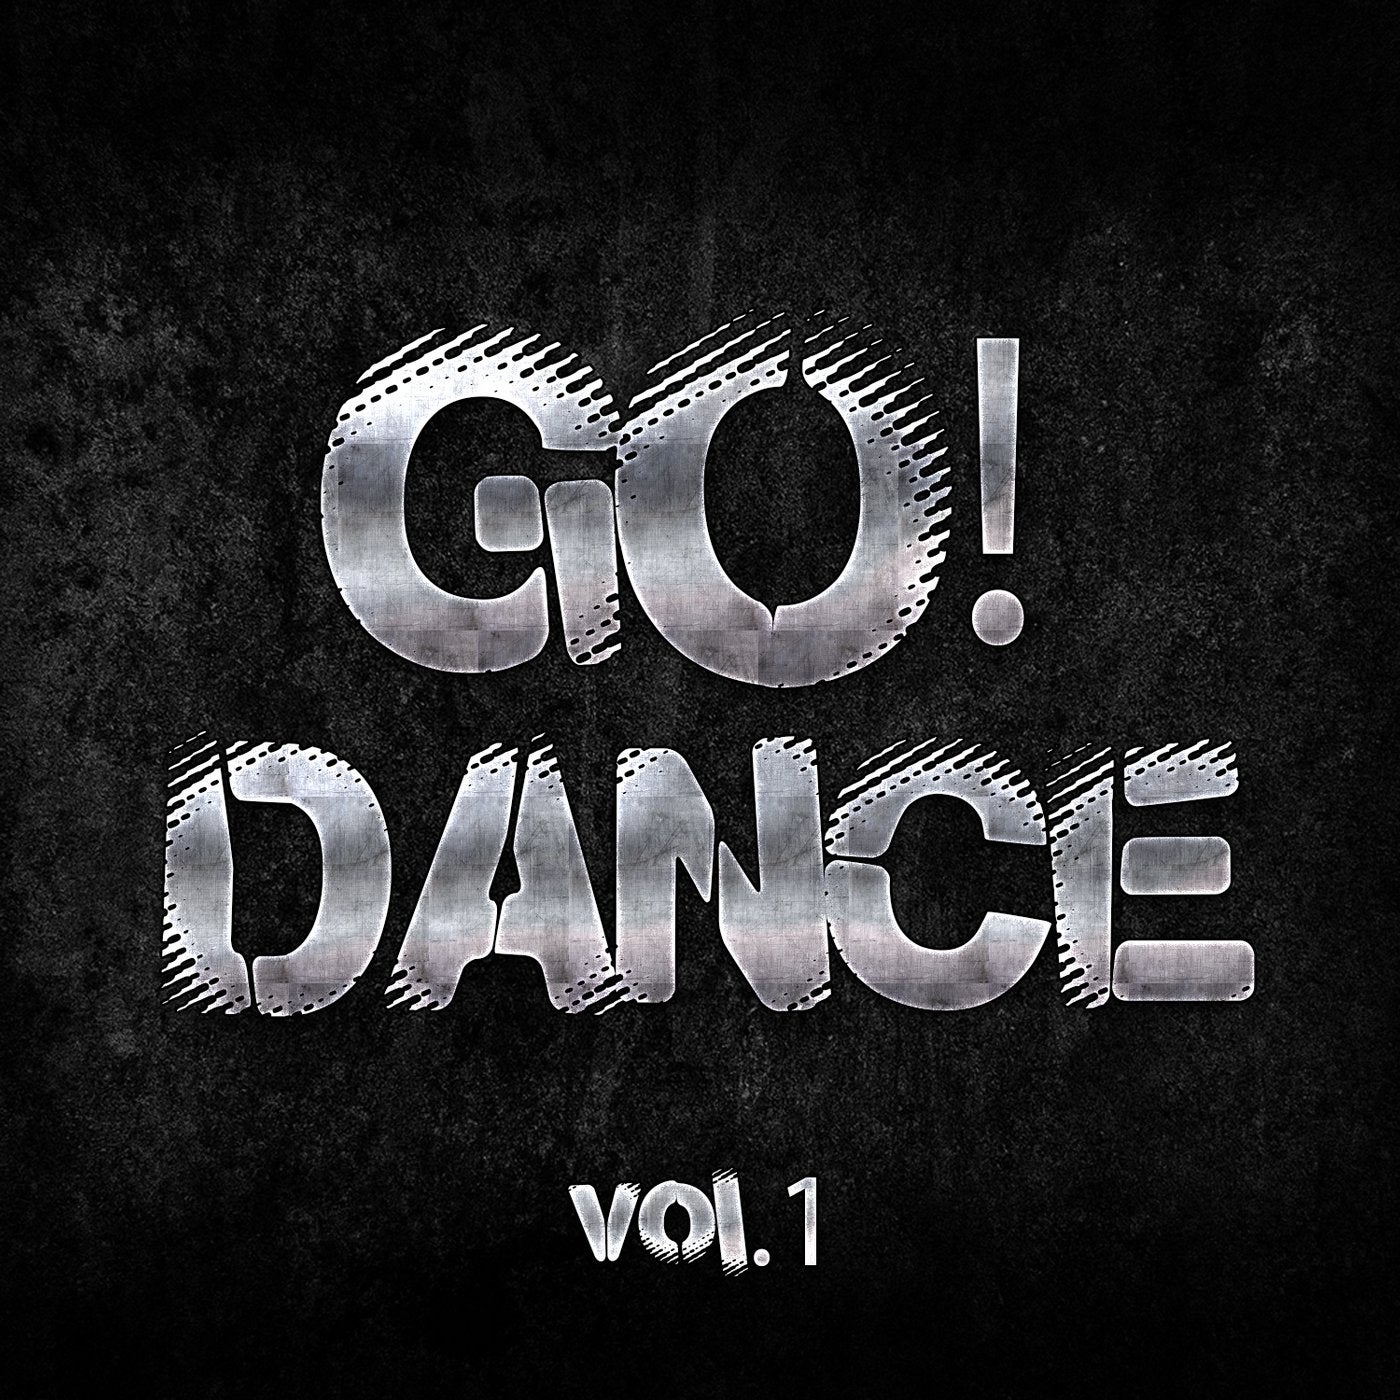 GO! Dance - Vol.1